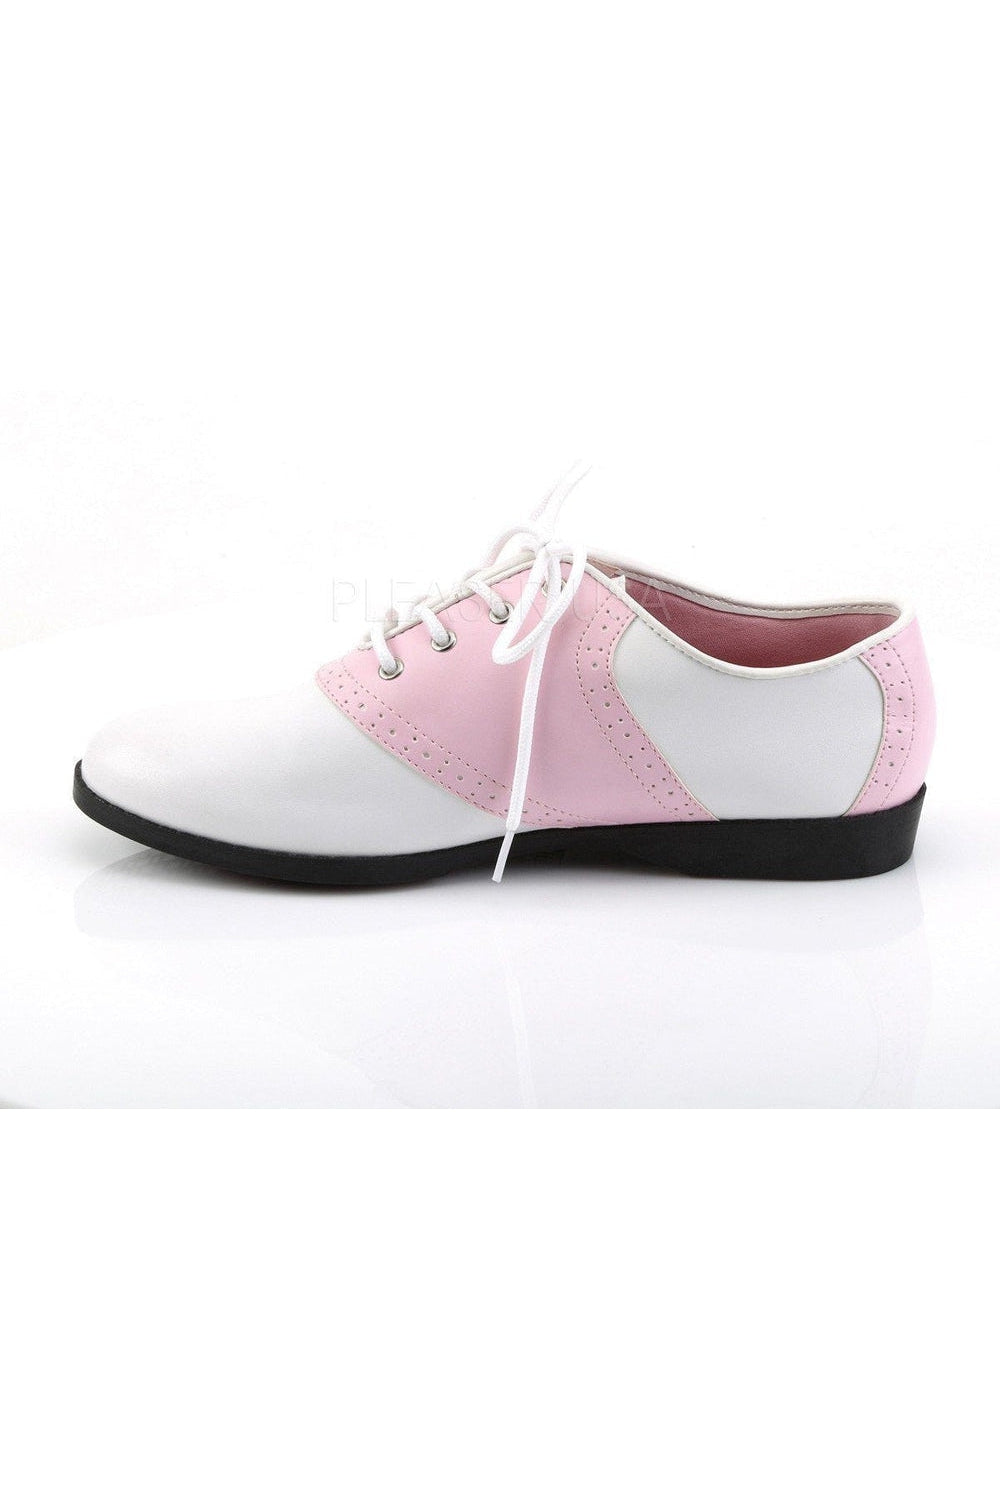 SADDLE-50 Saddle | Pink Faux Leather-Funtasma-Saddle Shoes-SEXYSHOES.COM